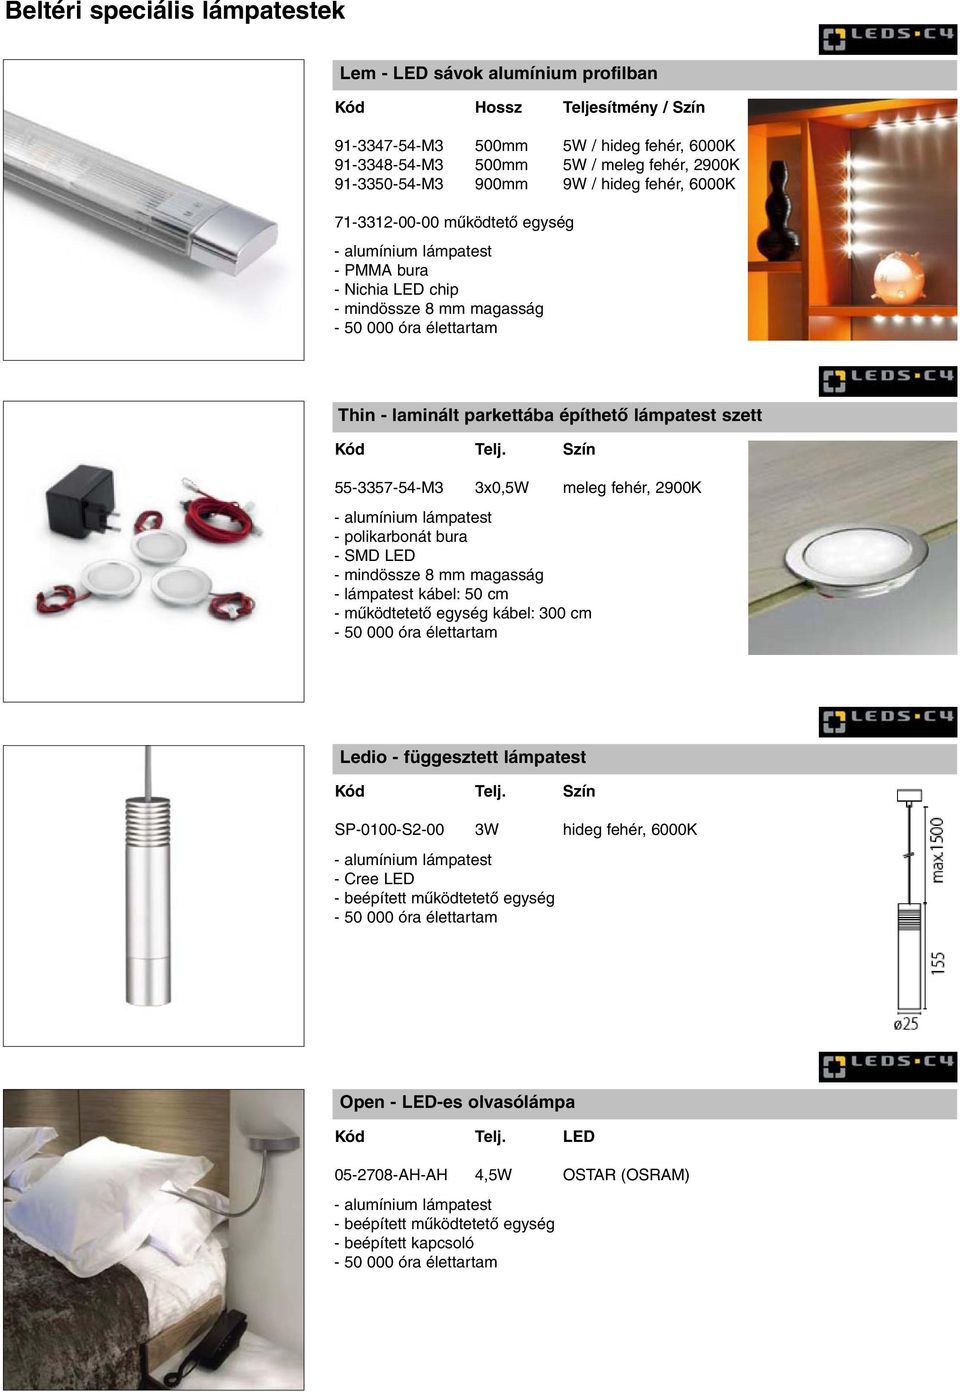 Szín 55-3357-54-M3 3x0,5W meleg fehér, 2900K - alumínium lámpatest - polikarbonát bura - SMD LED - mindössze 8 mm magasság - lámpatest kábel: 50 cm - mûködtetetõ egység kábel: 300 cm Ledio -